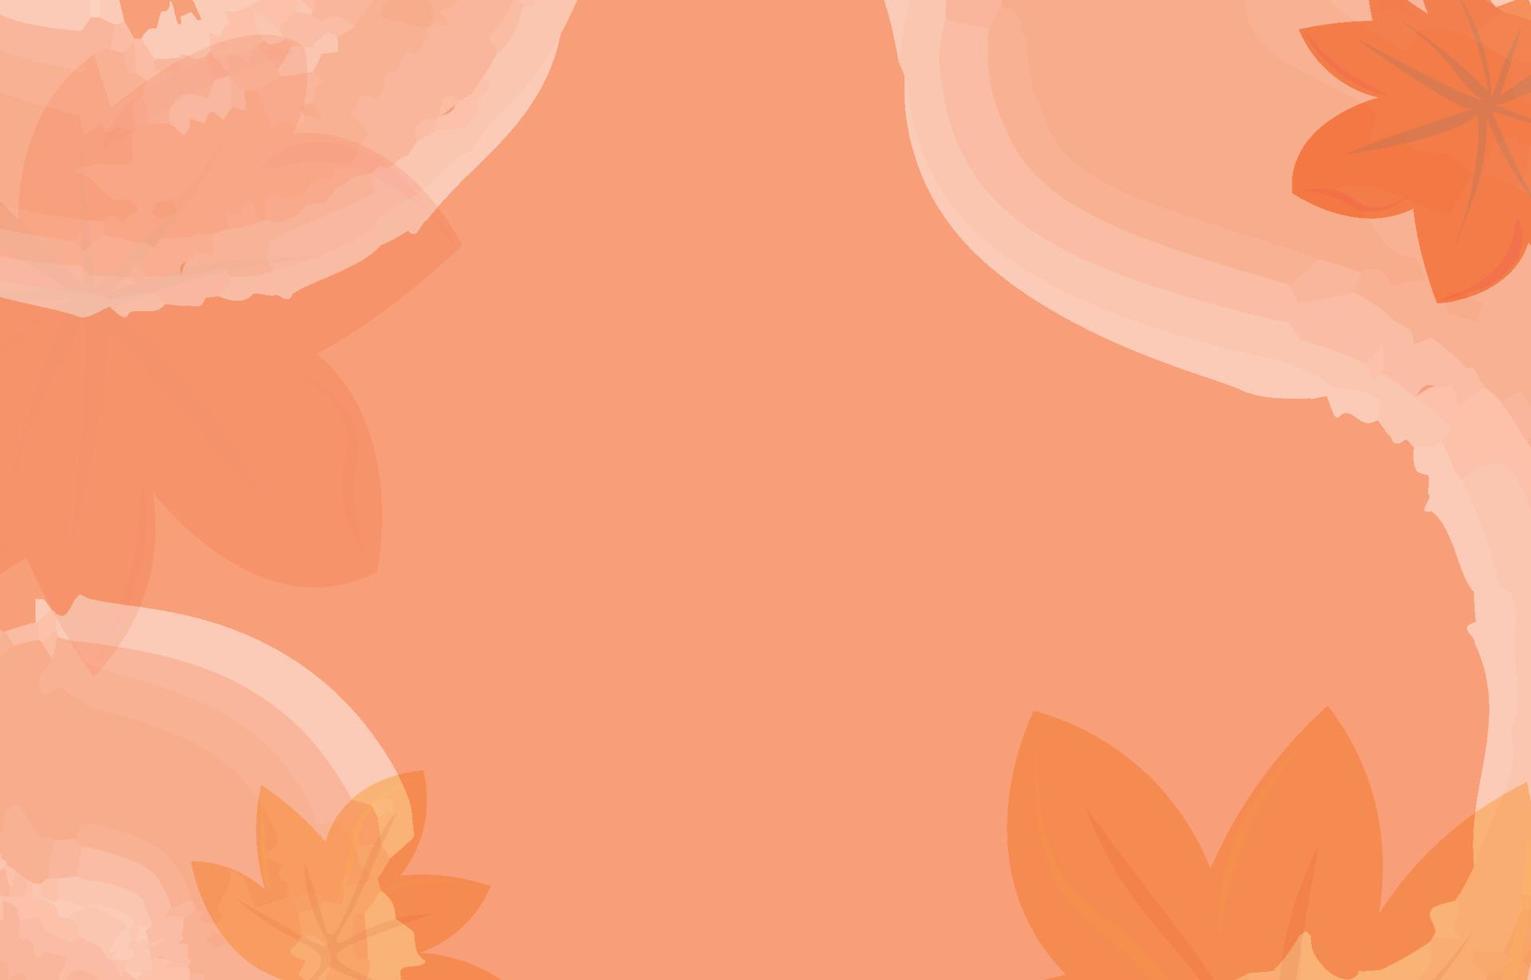 fondo mínimo de otoño decorado con hojas de color amarillo dorado y acuarela. concepto de caída, para papel tapiz, postales, tarjetas de felicitación, páginas web, pancartas, ventas en línea. ilustración vectorial vector